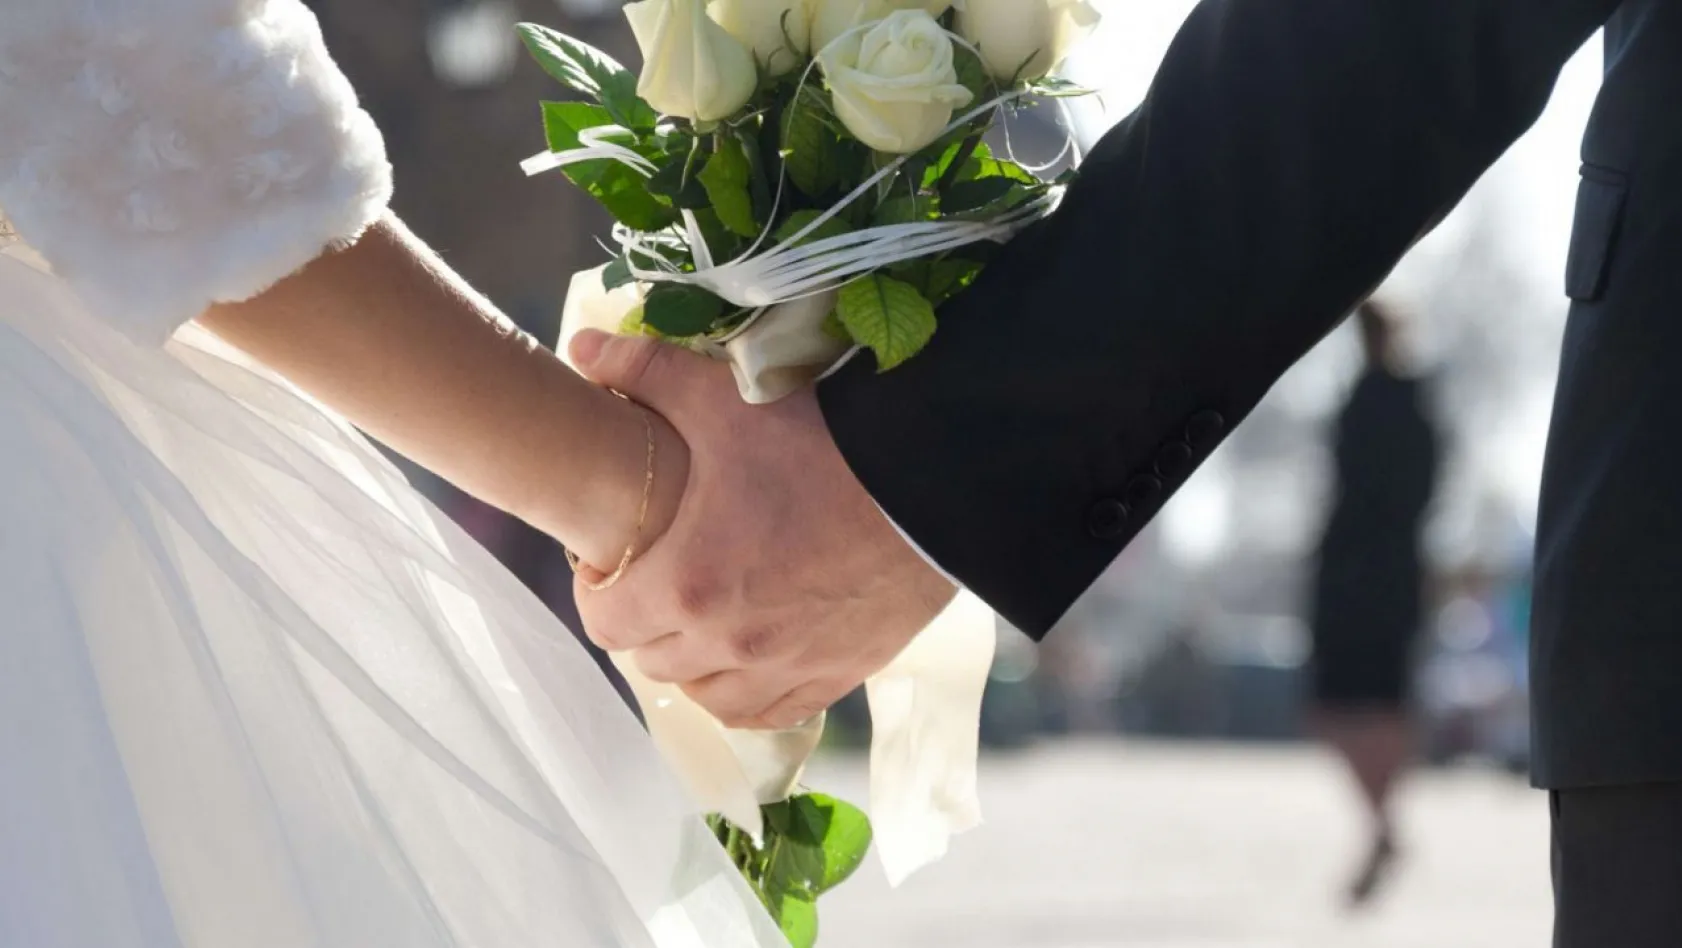 Kayseri'de ortalama evlenme yaşı belli oldu!